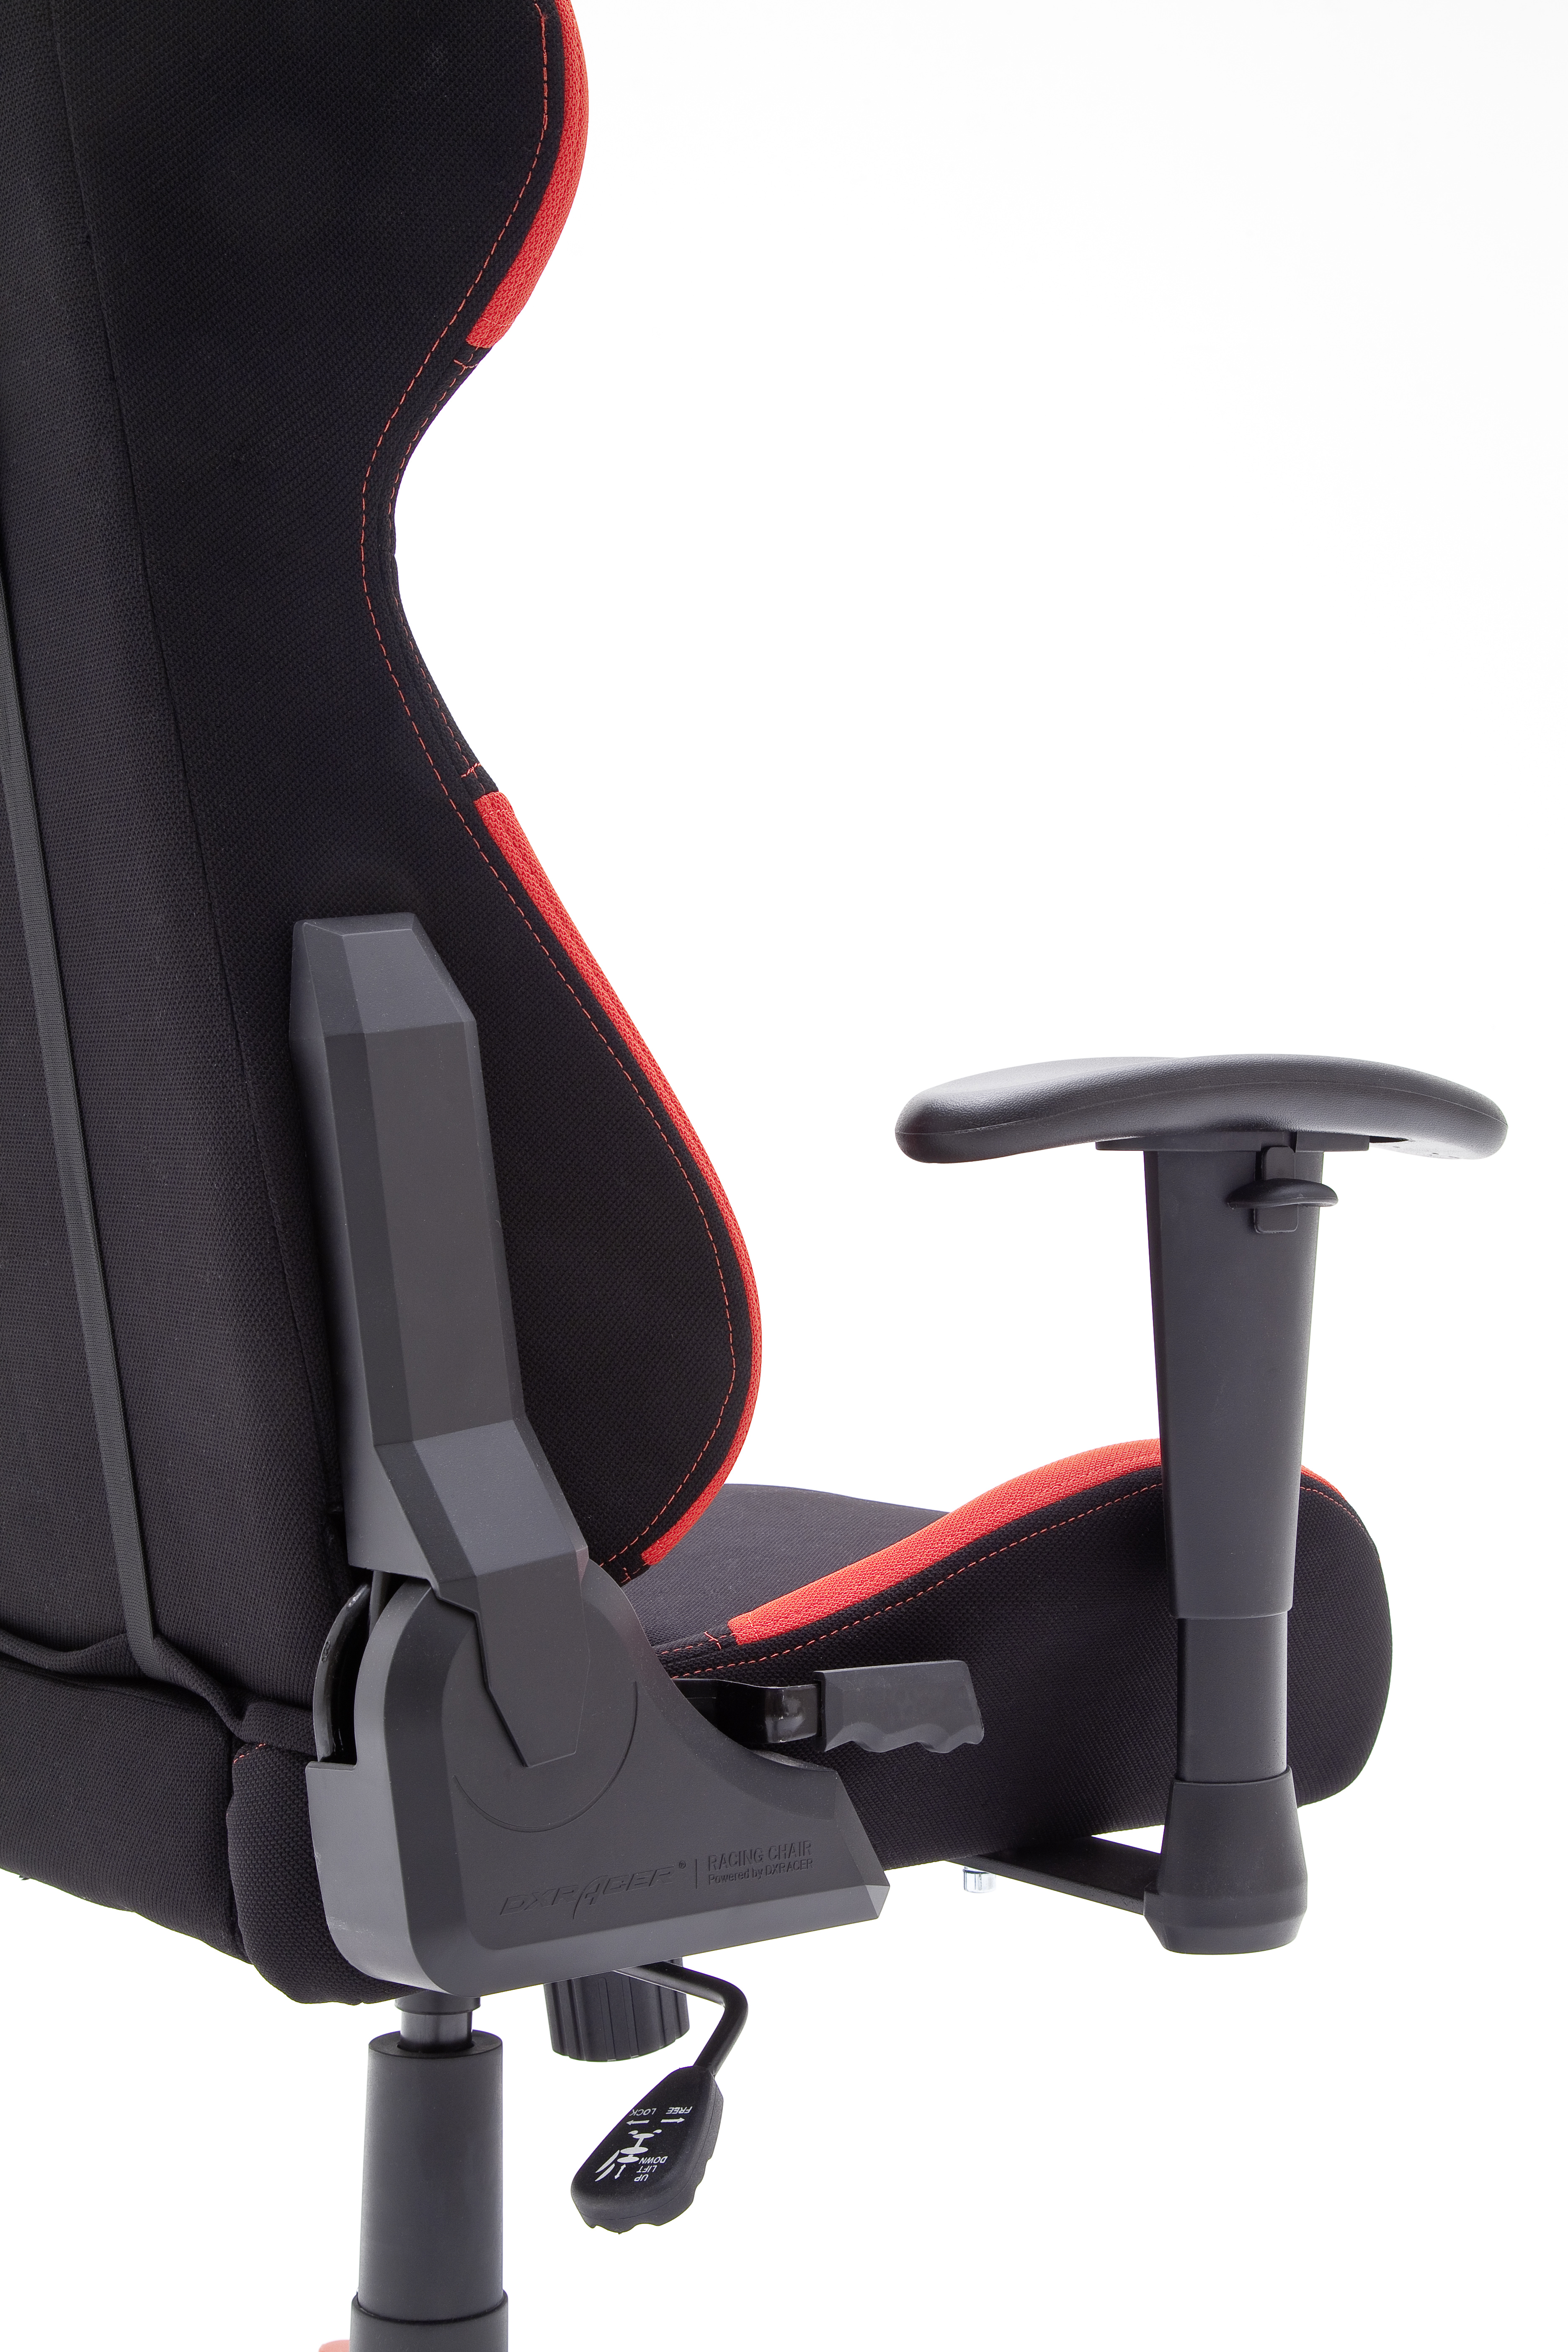 DX-Racer 1 Bürostuhl Cheffsessel Gaming schwarz rot